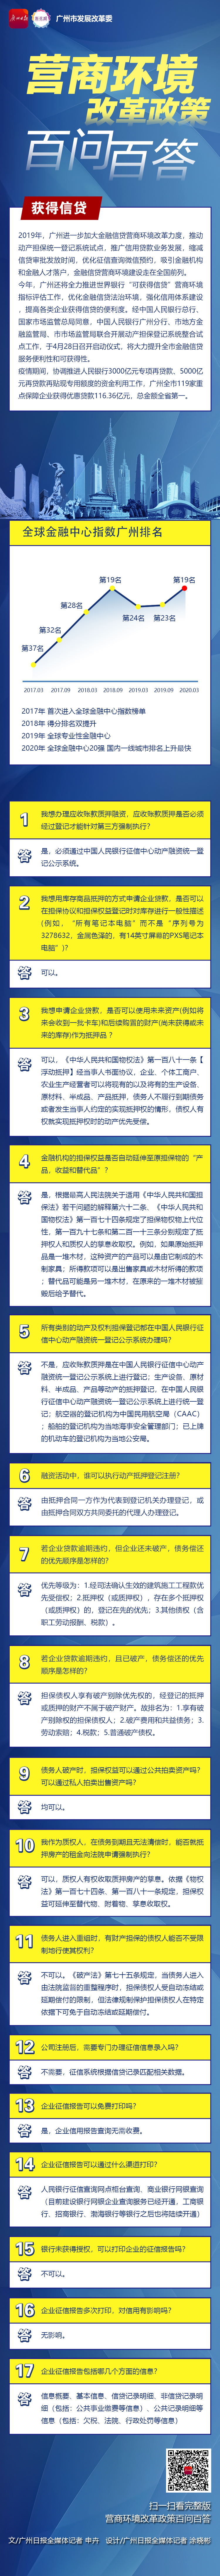 广州营商一图读懂-7获得信贷-广州日报.jpg